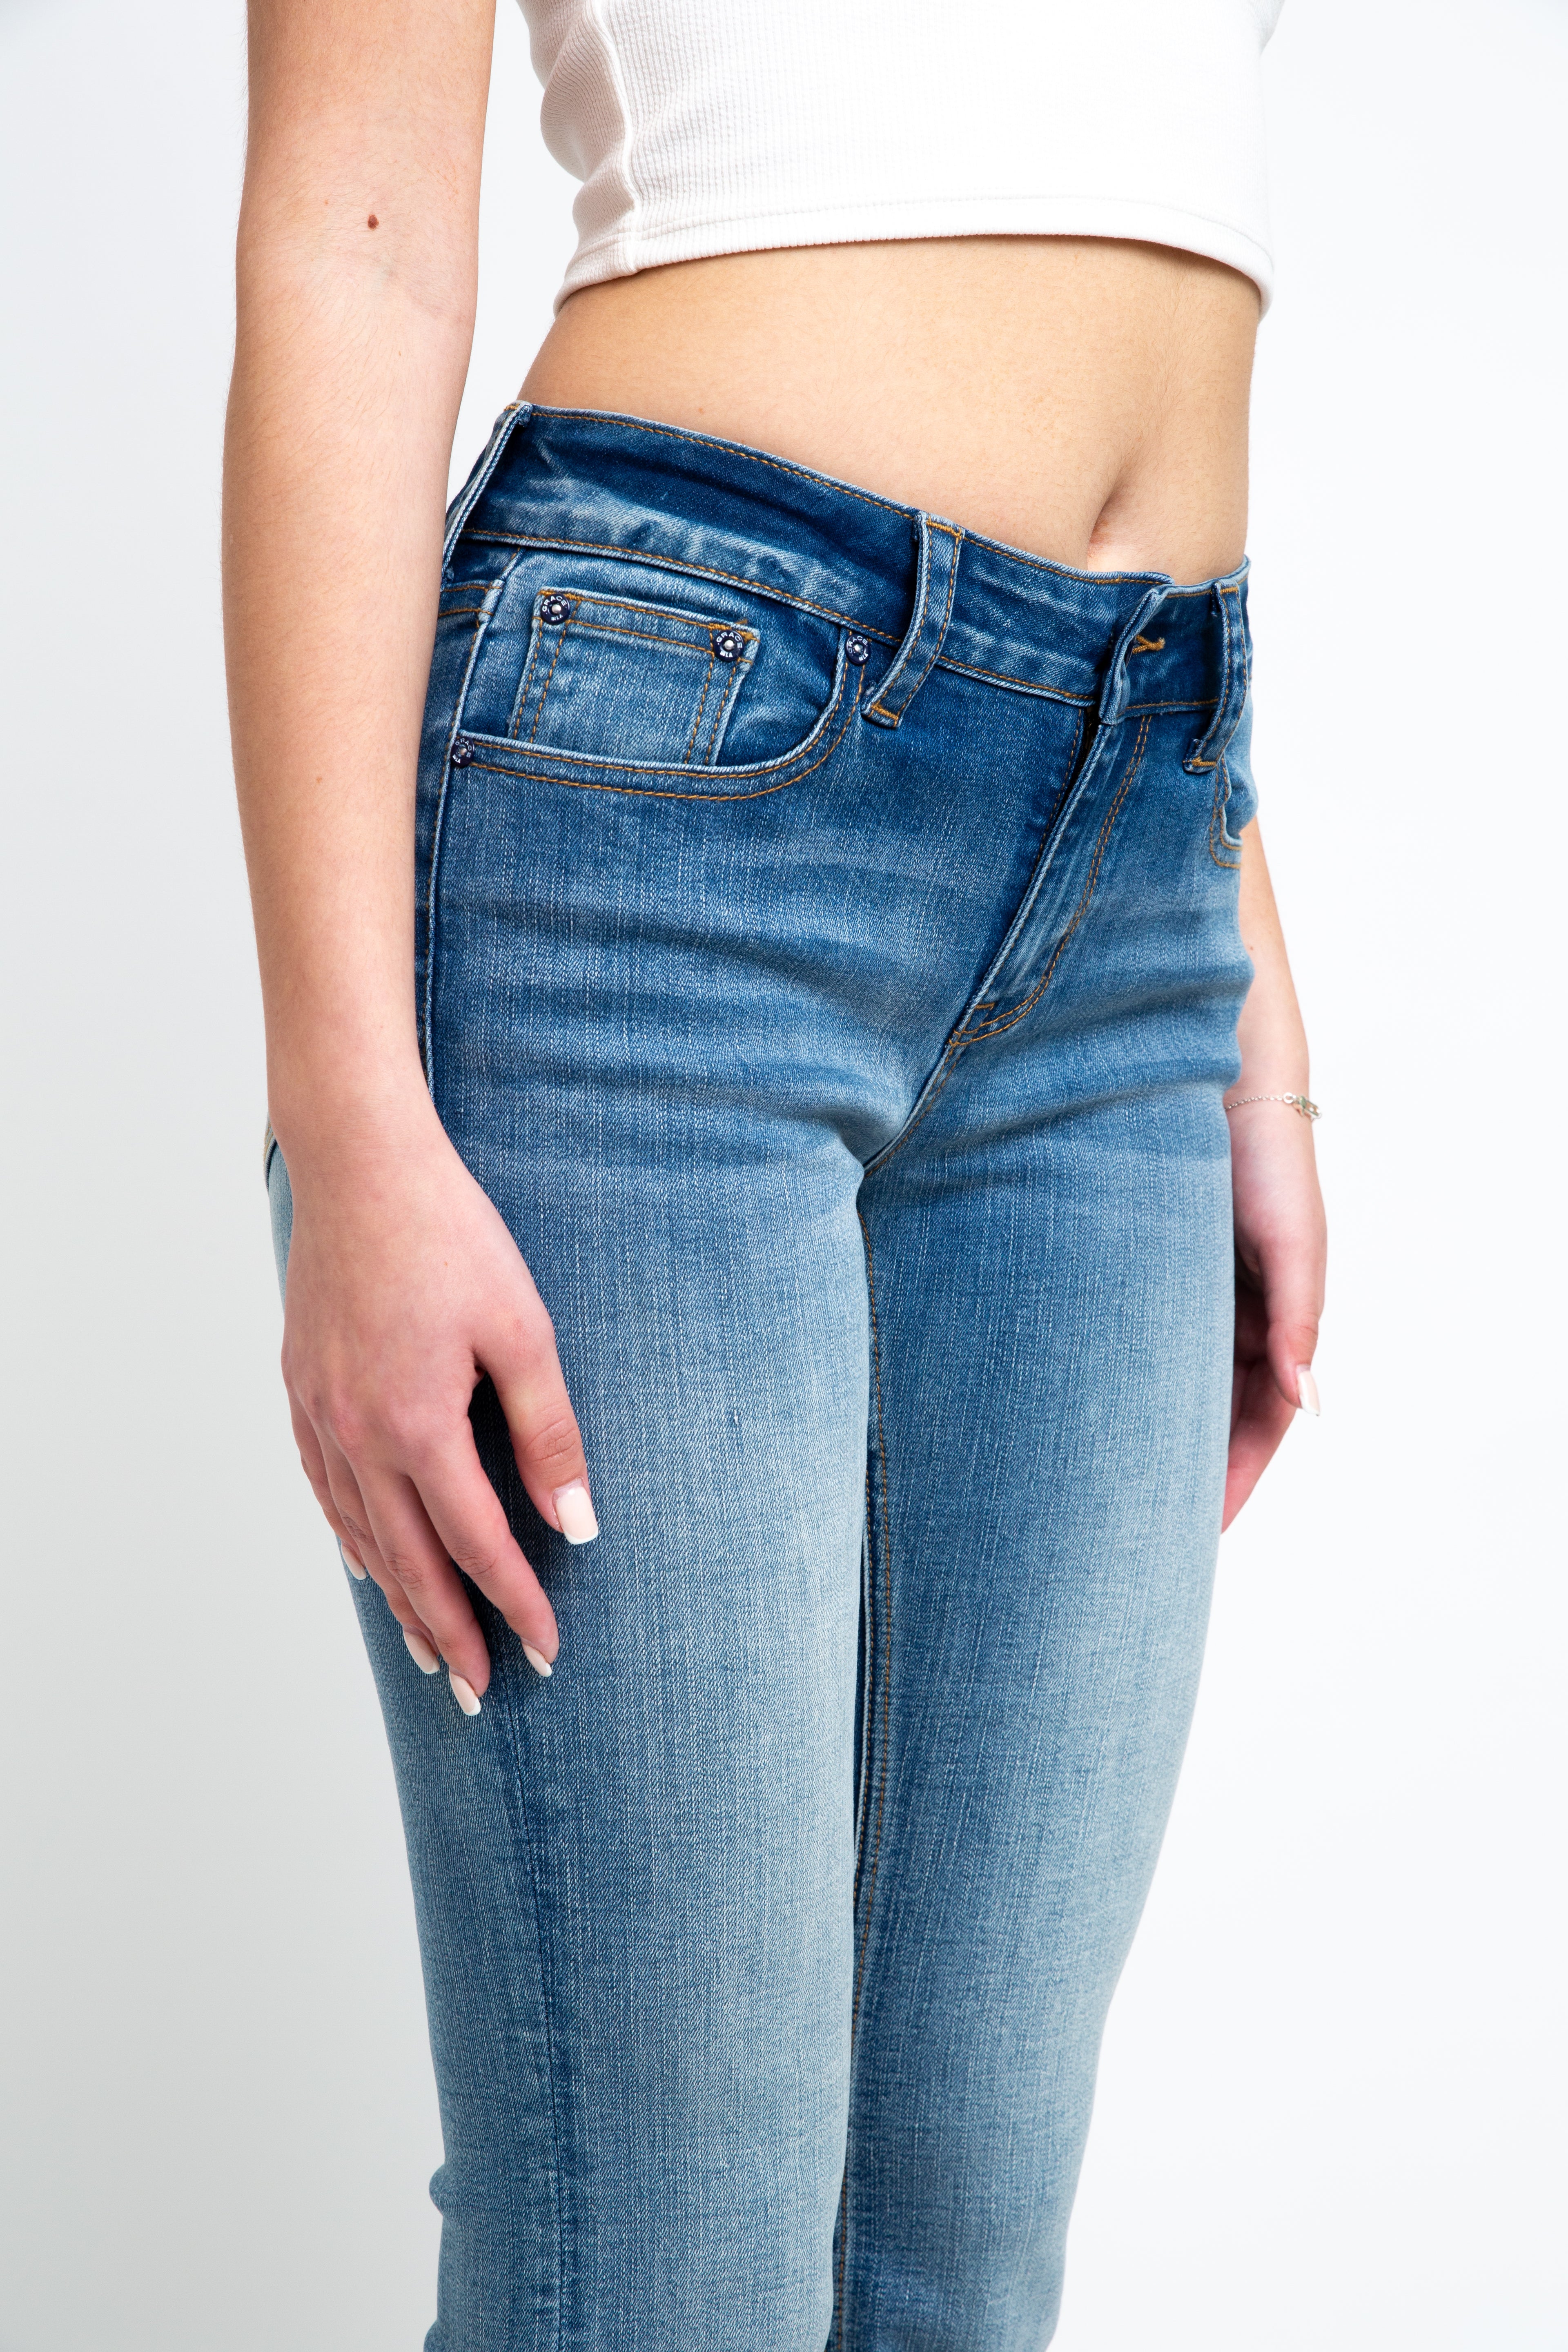 western jeans for women - grace in la 